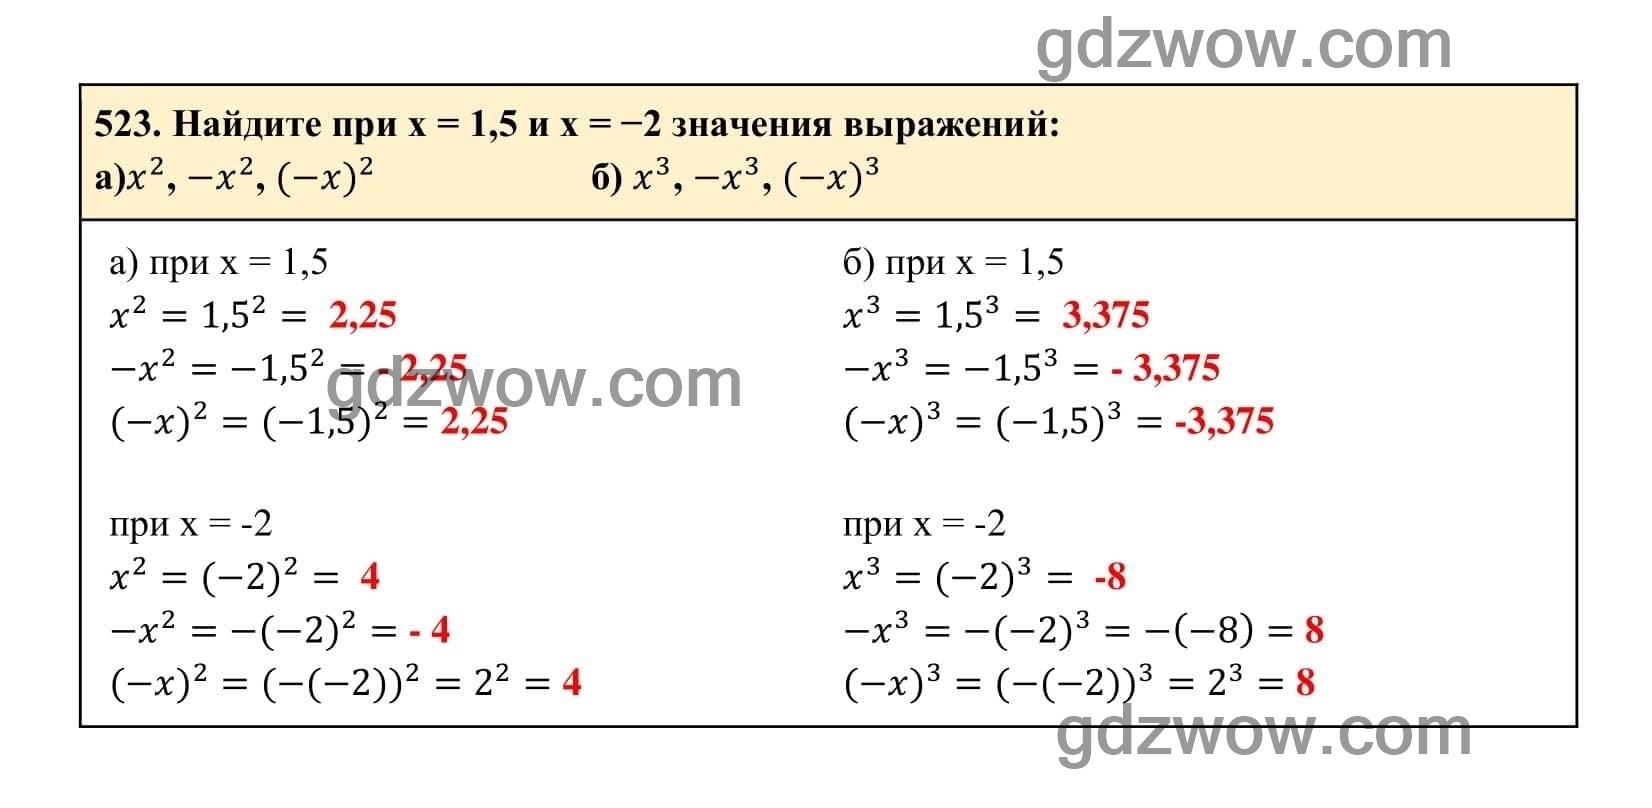 Упражнение 523 - ГДЗ по Алгебре 7 класс Учебник Макарычев (решебник) - GDZwow